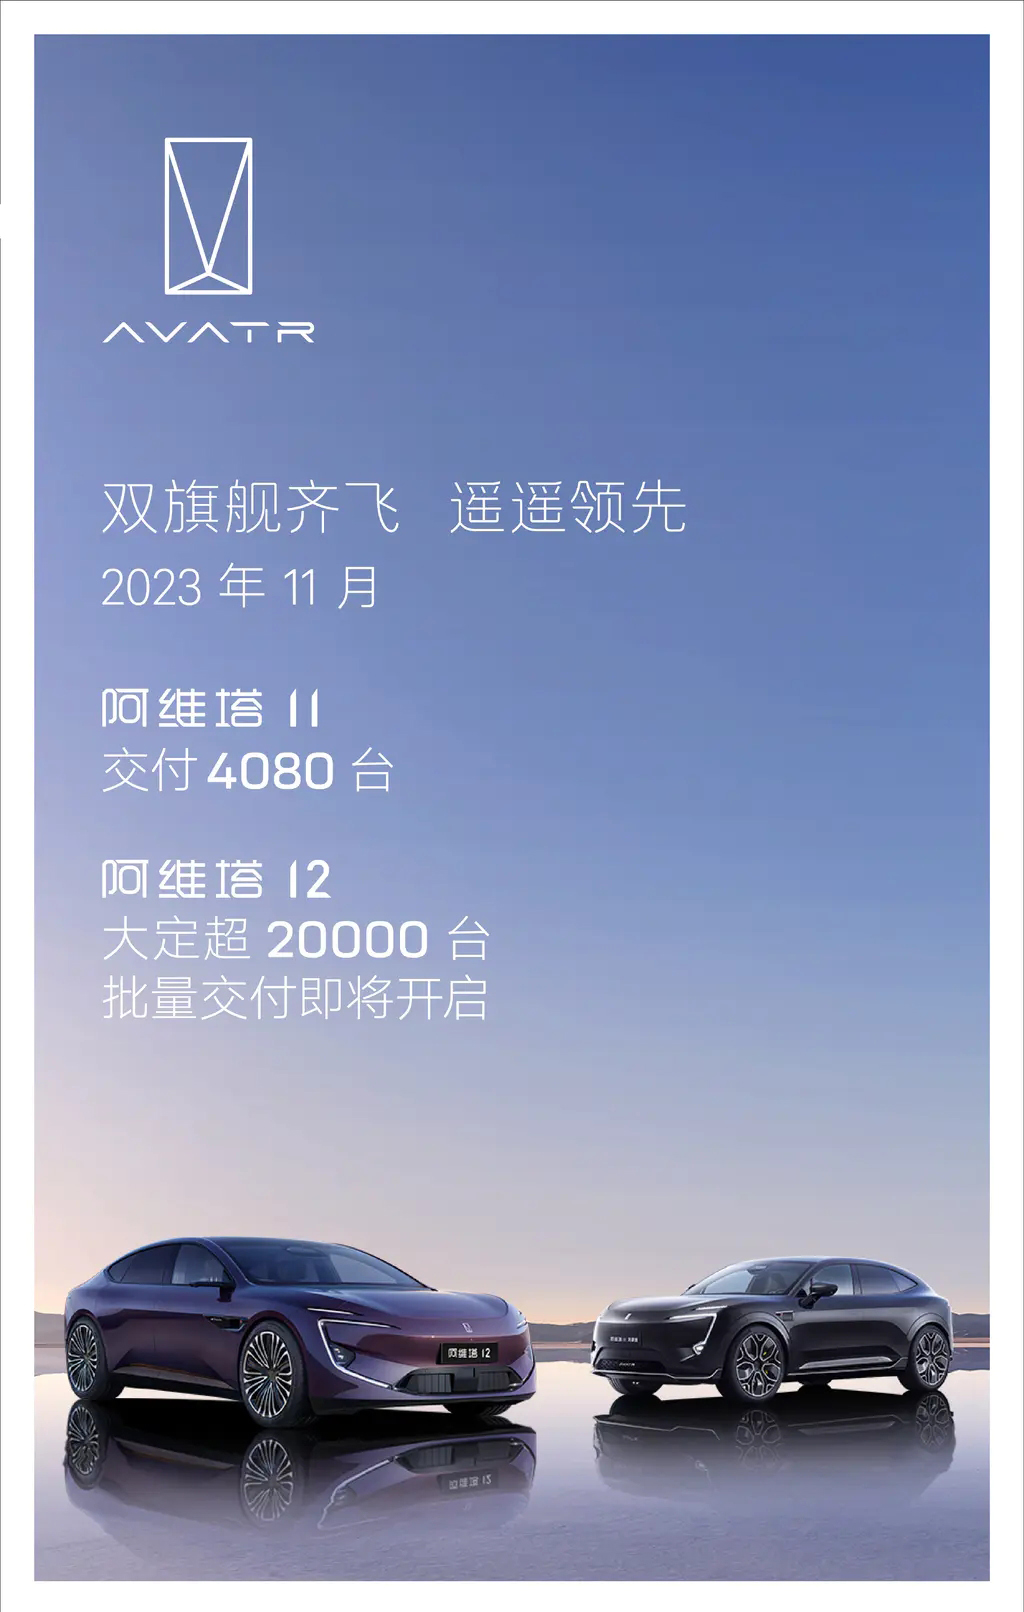 阿维塔12即将开启交付 大定订单突破20000台